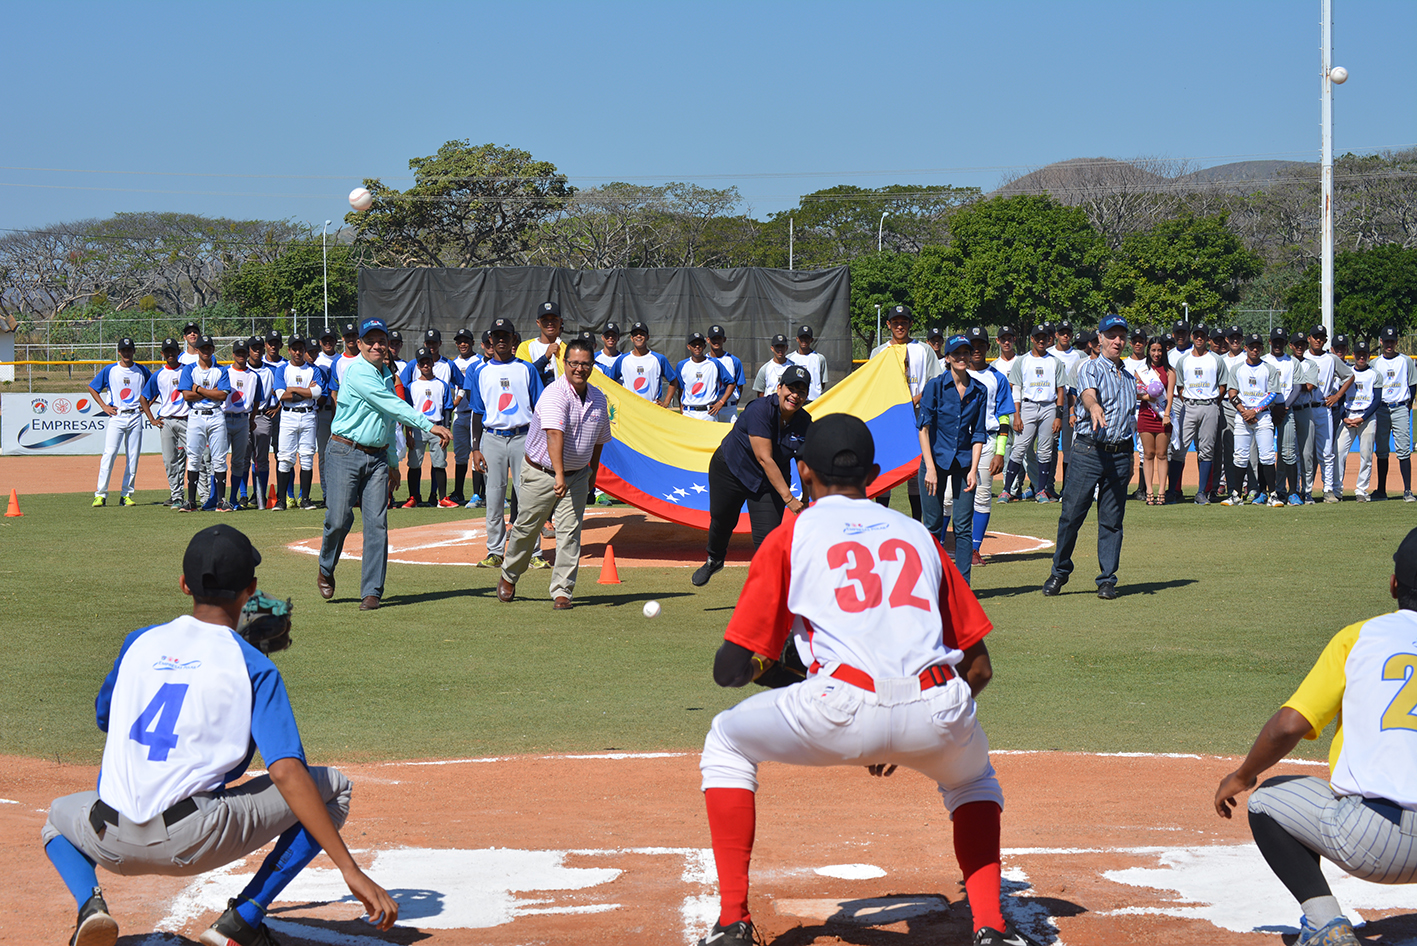 El programa RBI Venezuela de Empresas Polar inició su 8va. temporada con 120 peloteros